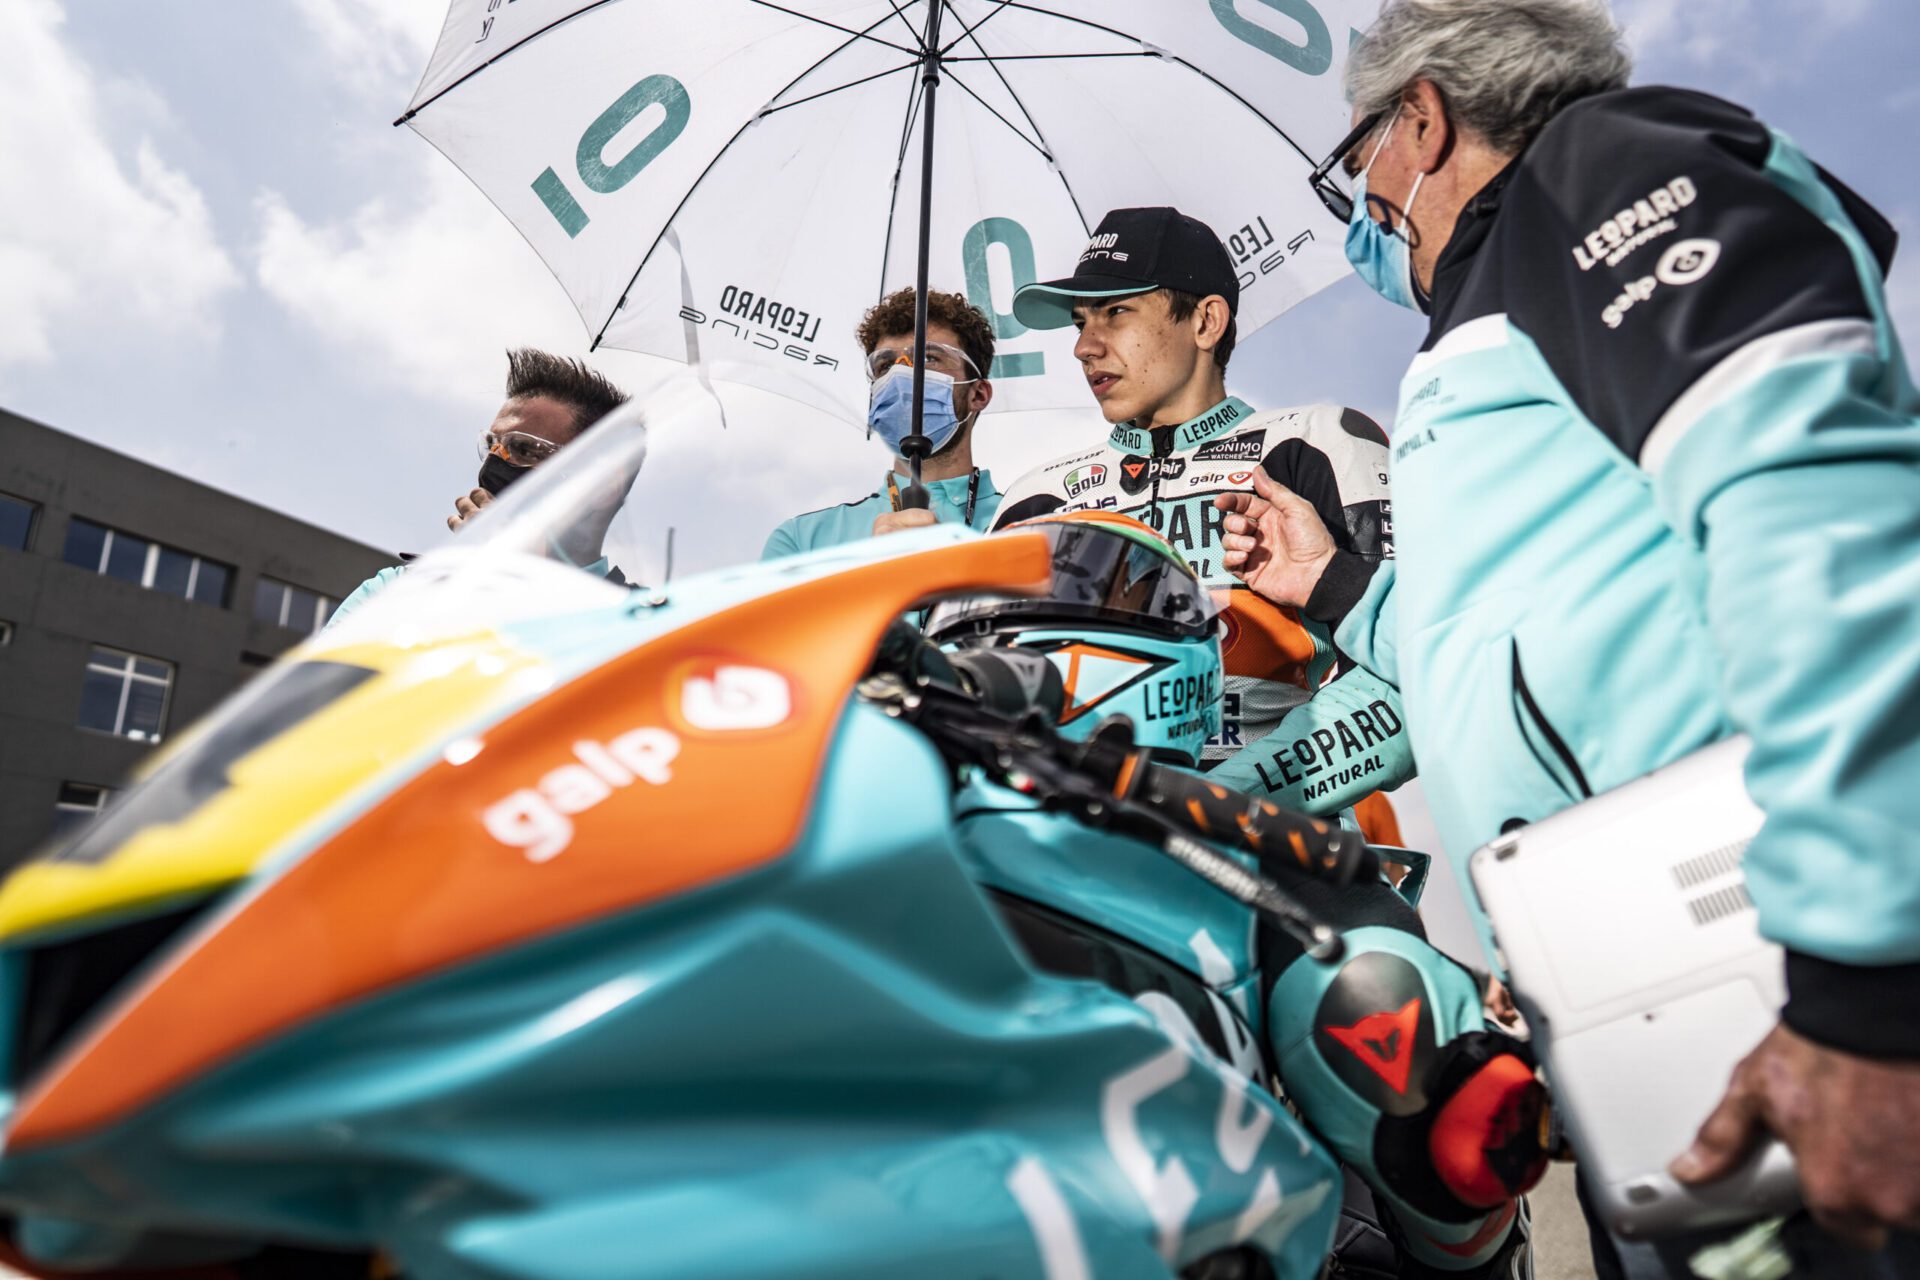 Kiko Maria cumpre quarentena obrigatória e falha Europeu de Moto 2 em Portimão